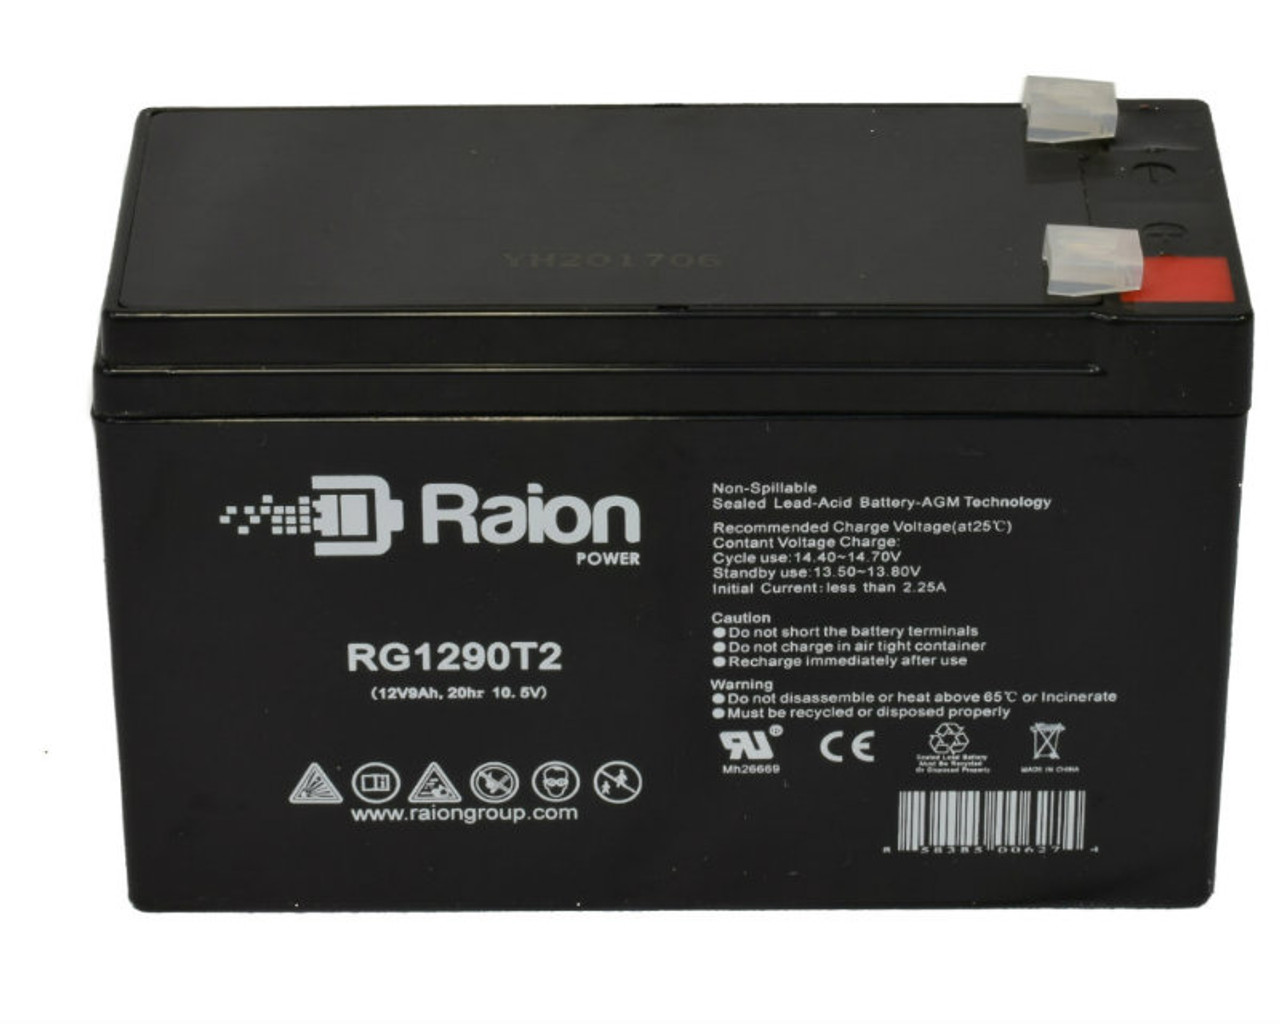 Raion Power RG1290T2 12V 9Ah Lead Acid Battery for Saft PHYSIOLOGICAL MON